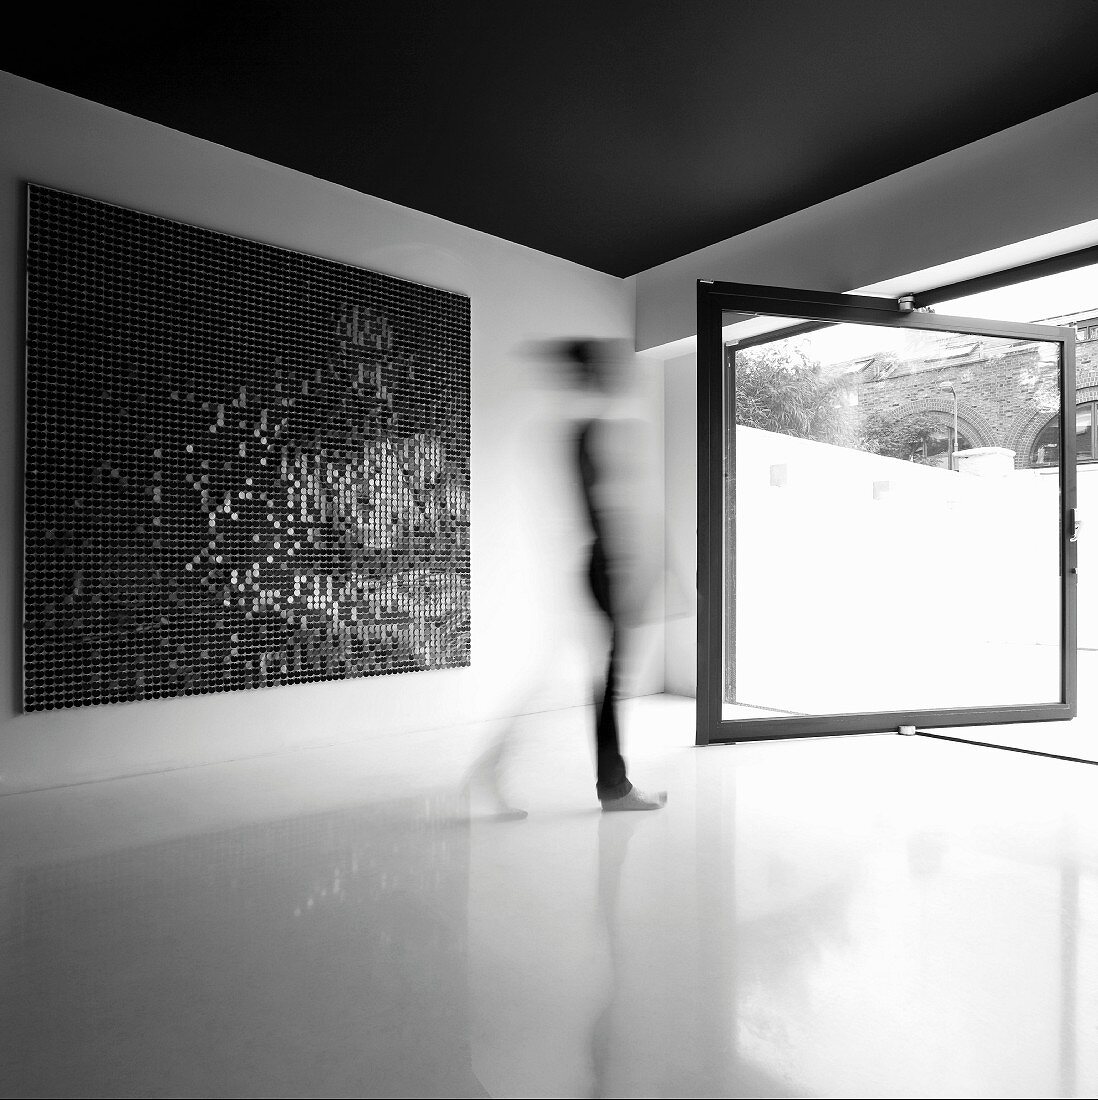 Modernes Bild im minimalistischen Raum mit drehbarer raumhoher Fensterscheibe